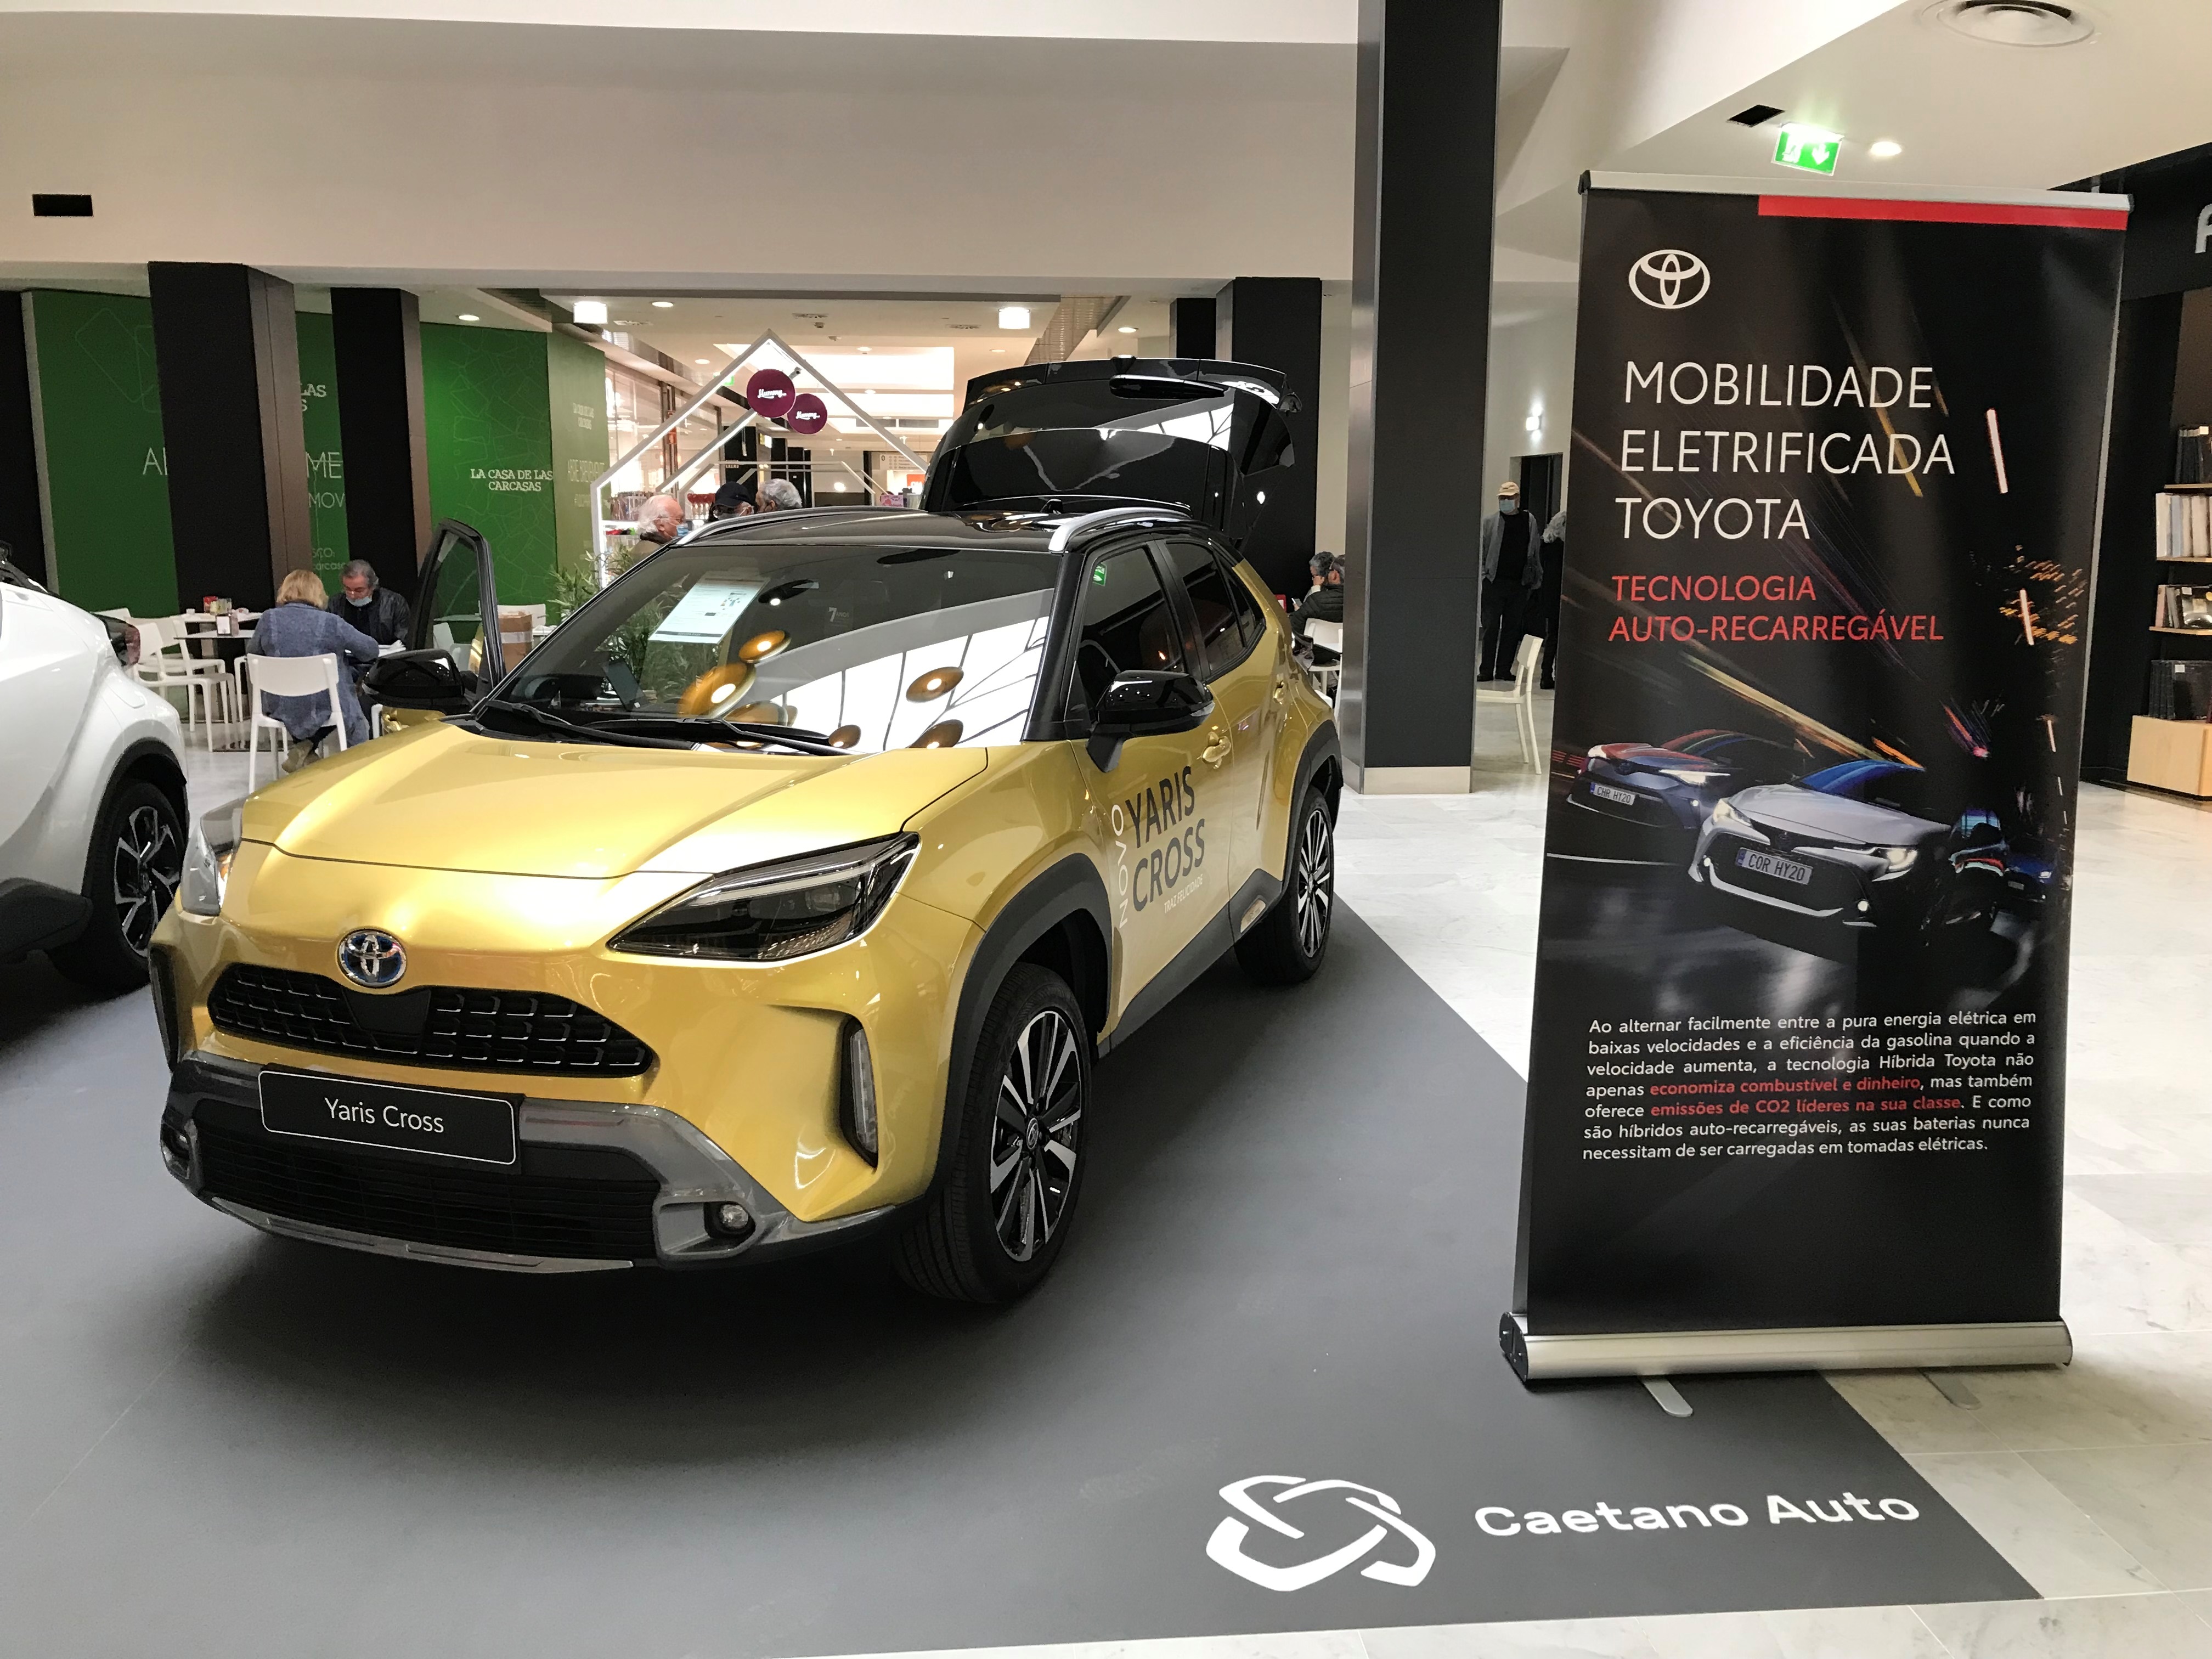 Caetano Auto em Aveiro promove tecnologia híbrida Toyota no Centro Comercial Glicínias de Aveiro